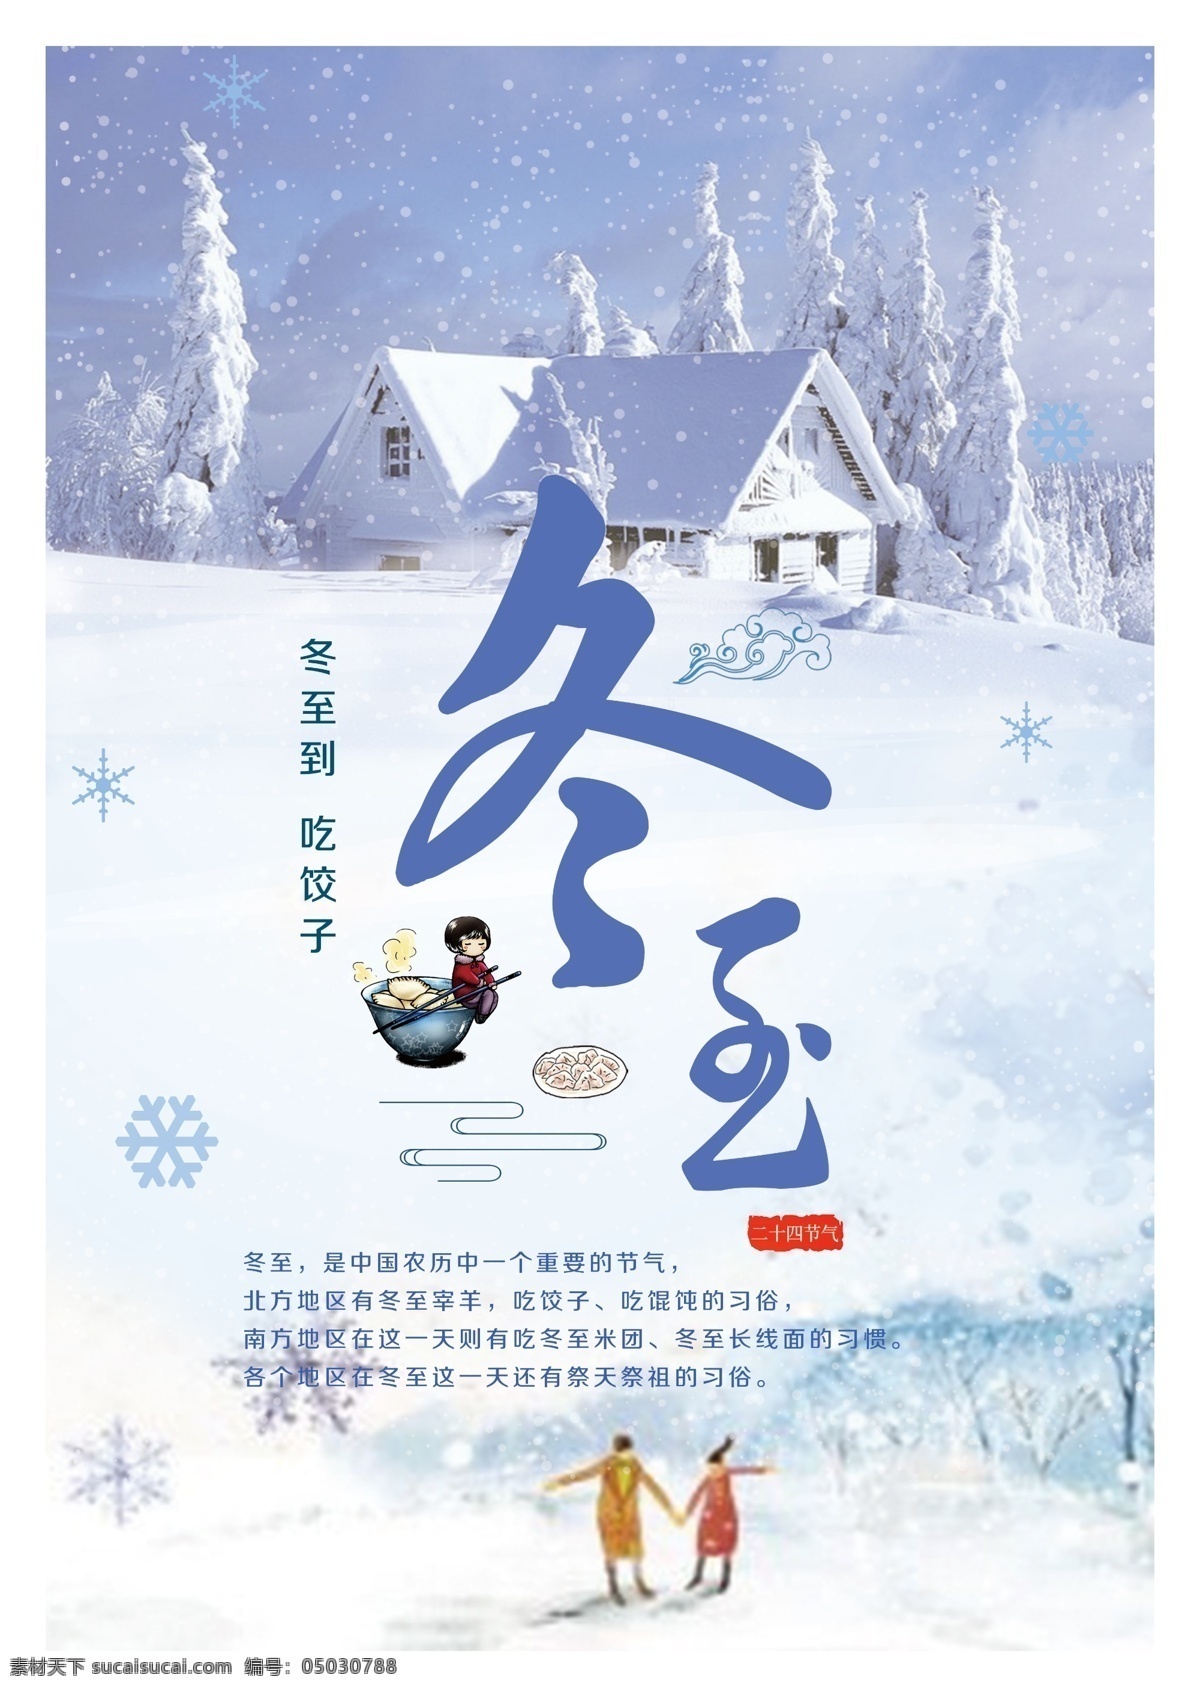 冬至 暖冬 雪景 海报 吃水饺 节气 平面广告 节日 展板